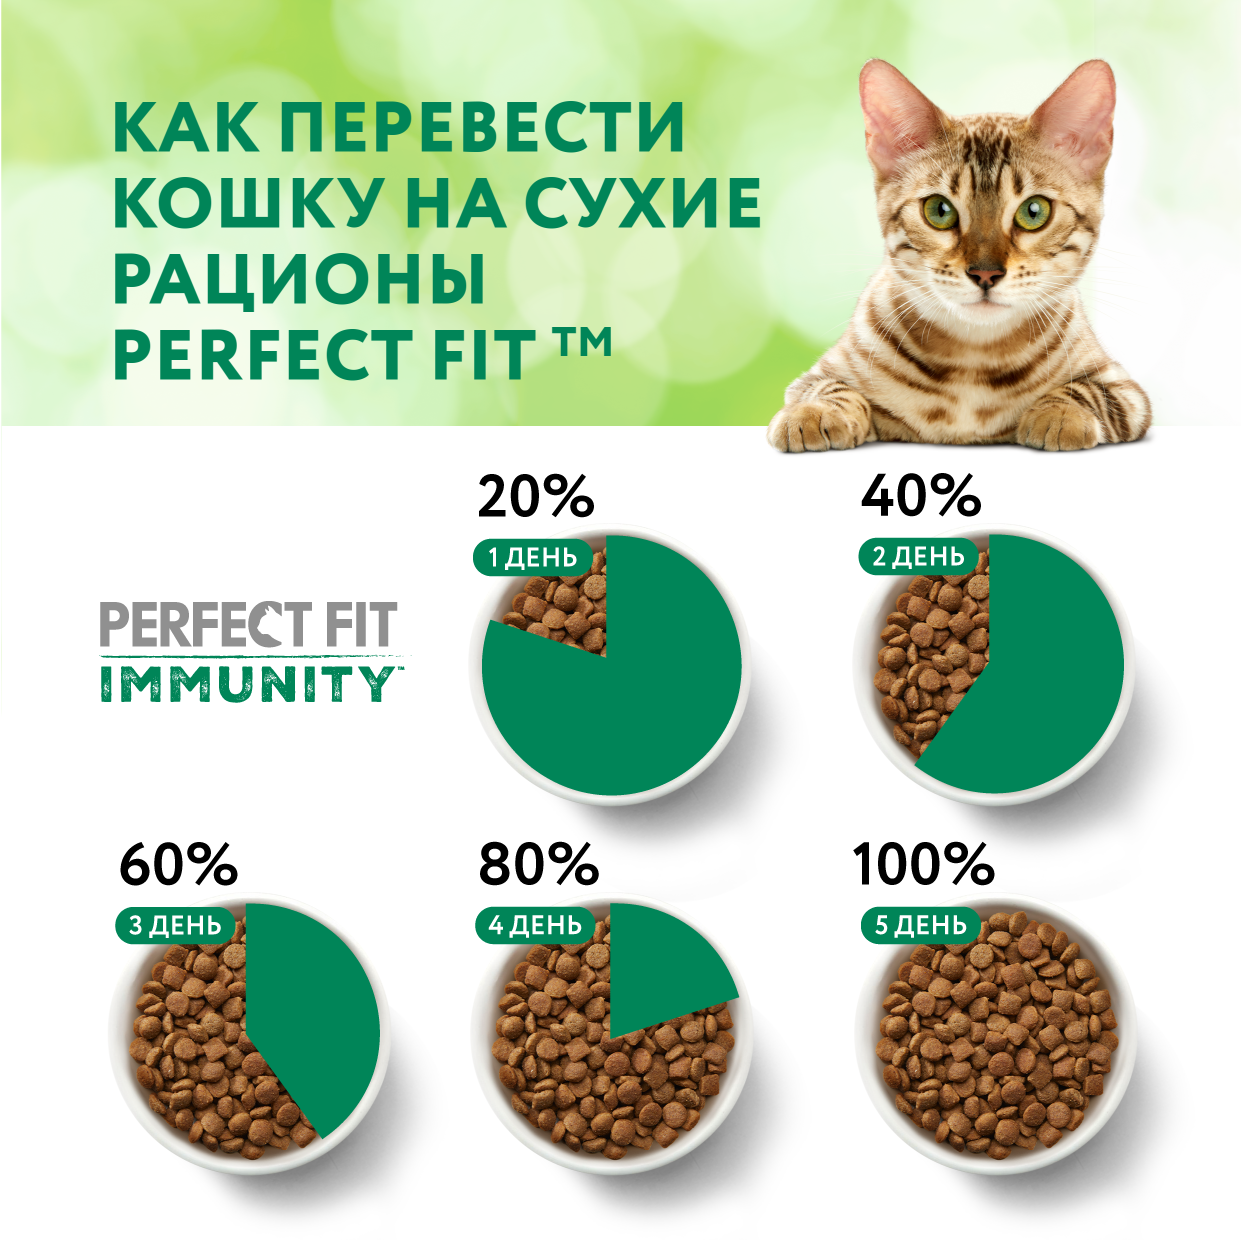 Сухой корм для иммунитета кошек Perfect Fit Immunity говядина, семена льна, голубика 1,1 кг